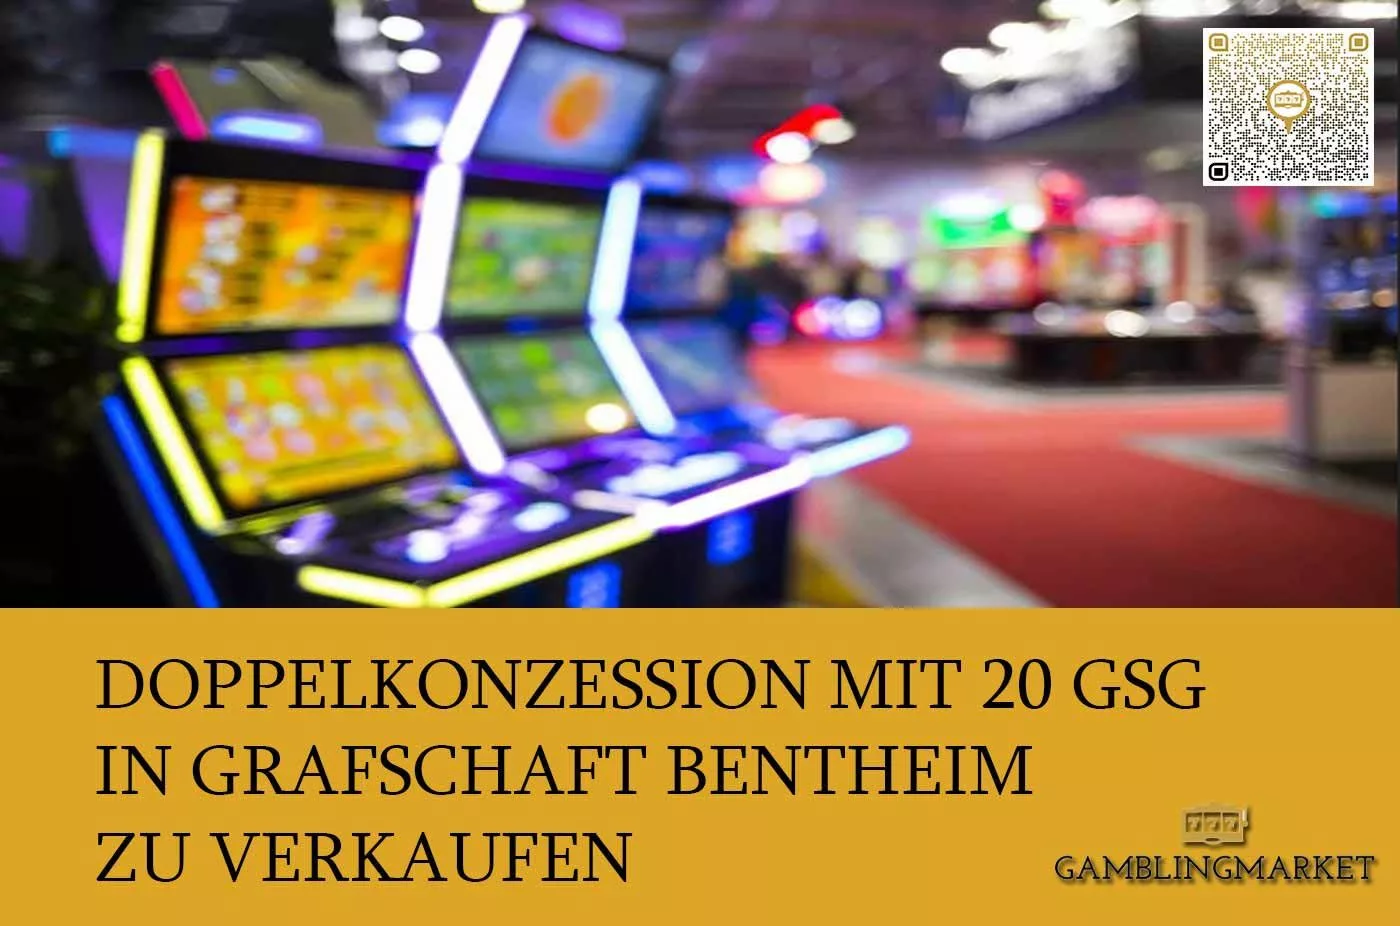 Doppelkonzession mit 20 GSG in Grafschaft Bentheim zu verkaufen